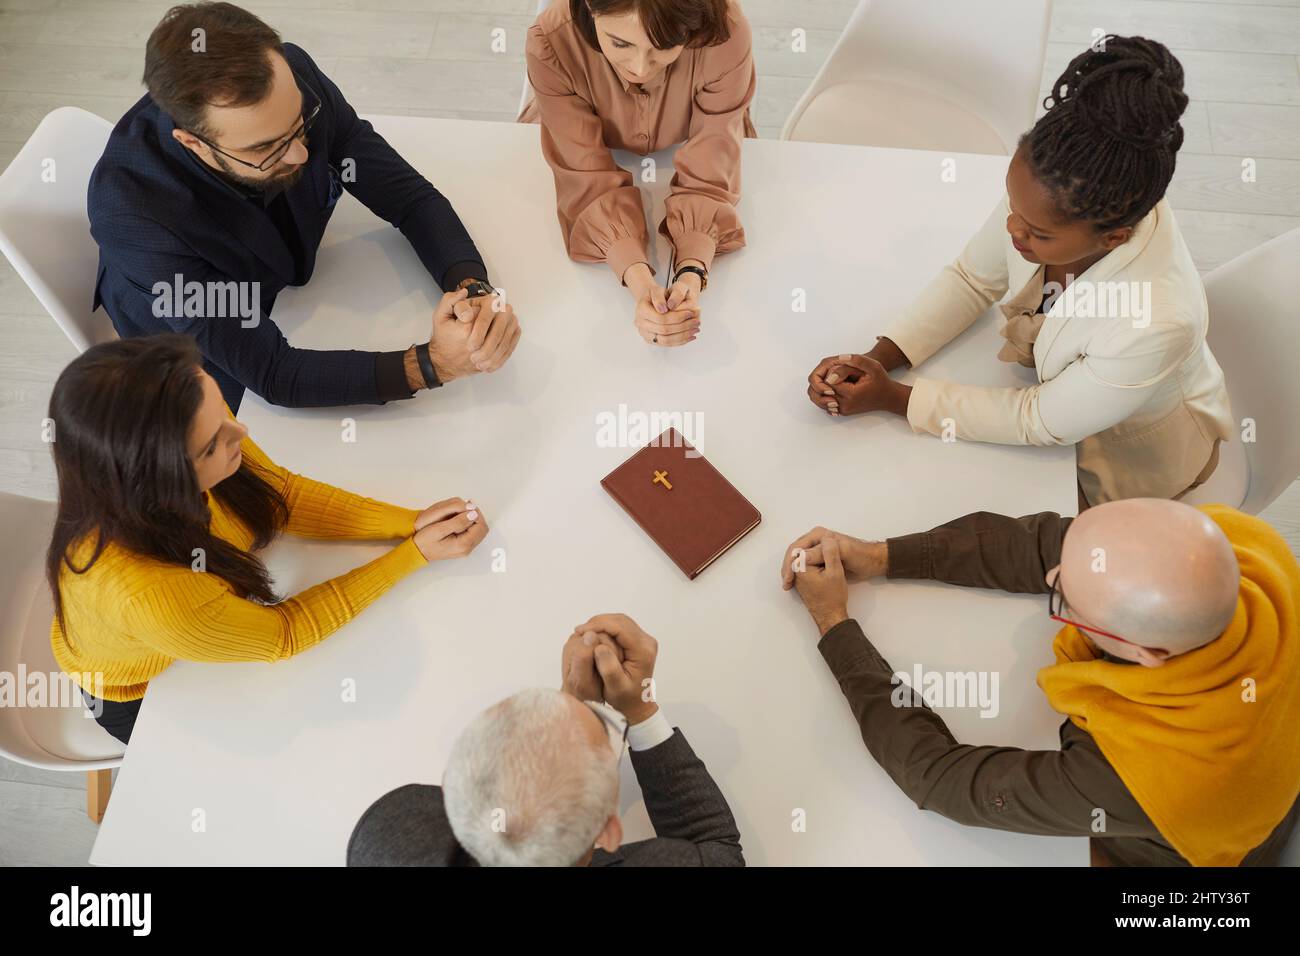 Religiöse Menschen in der Bibelstudiengruppe sitzen am Tisch und beten gemeinsam zu Gott Stockfoto